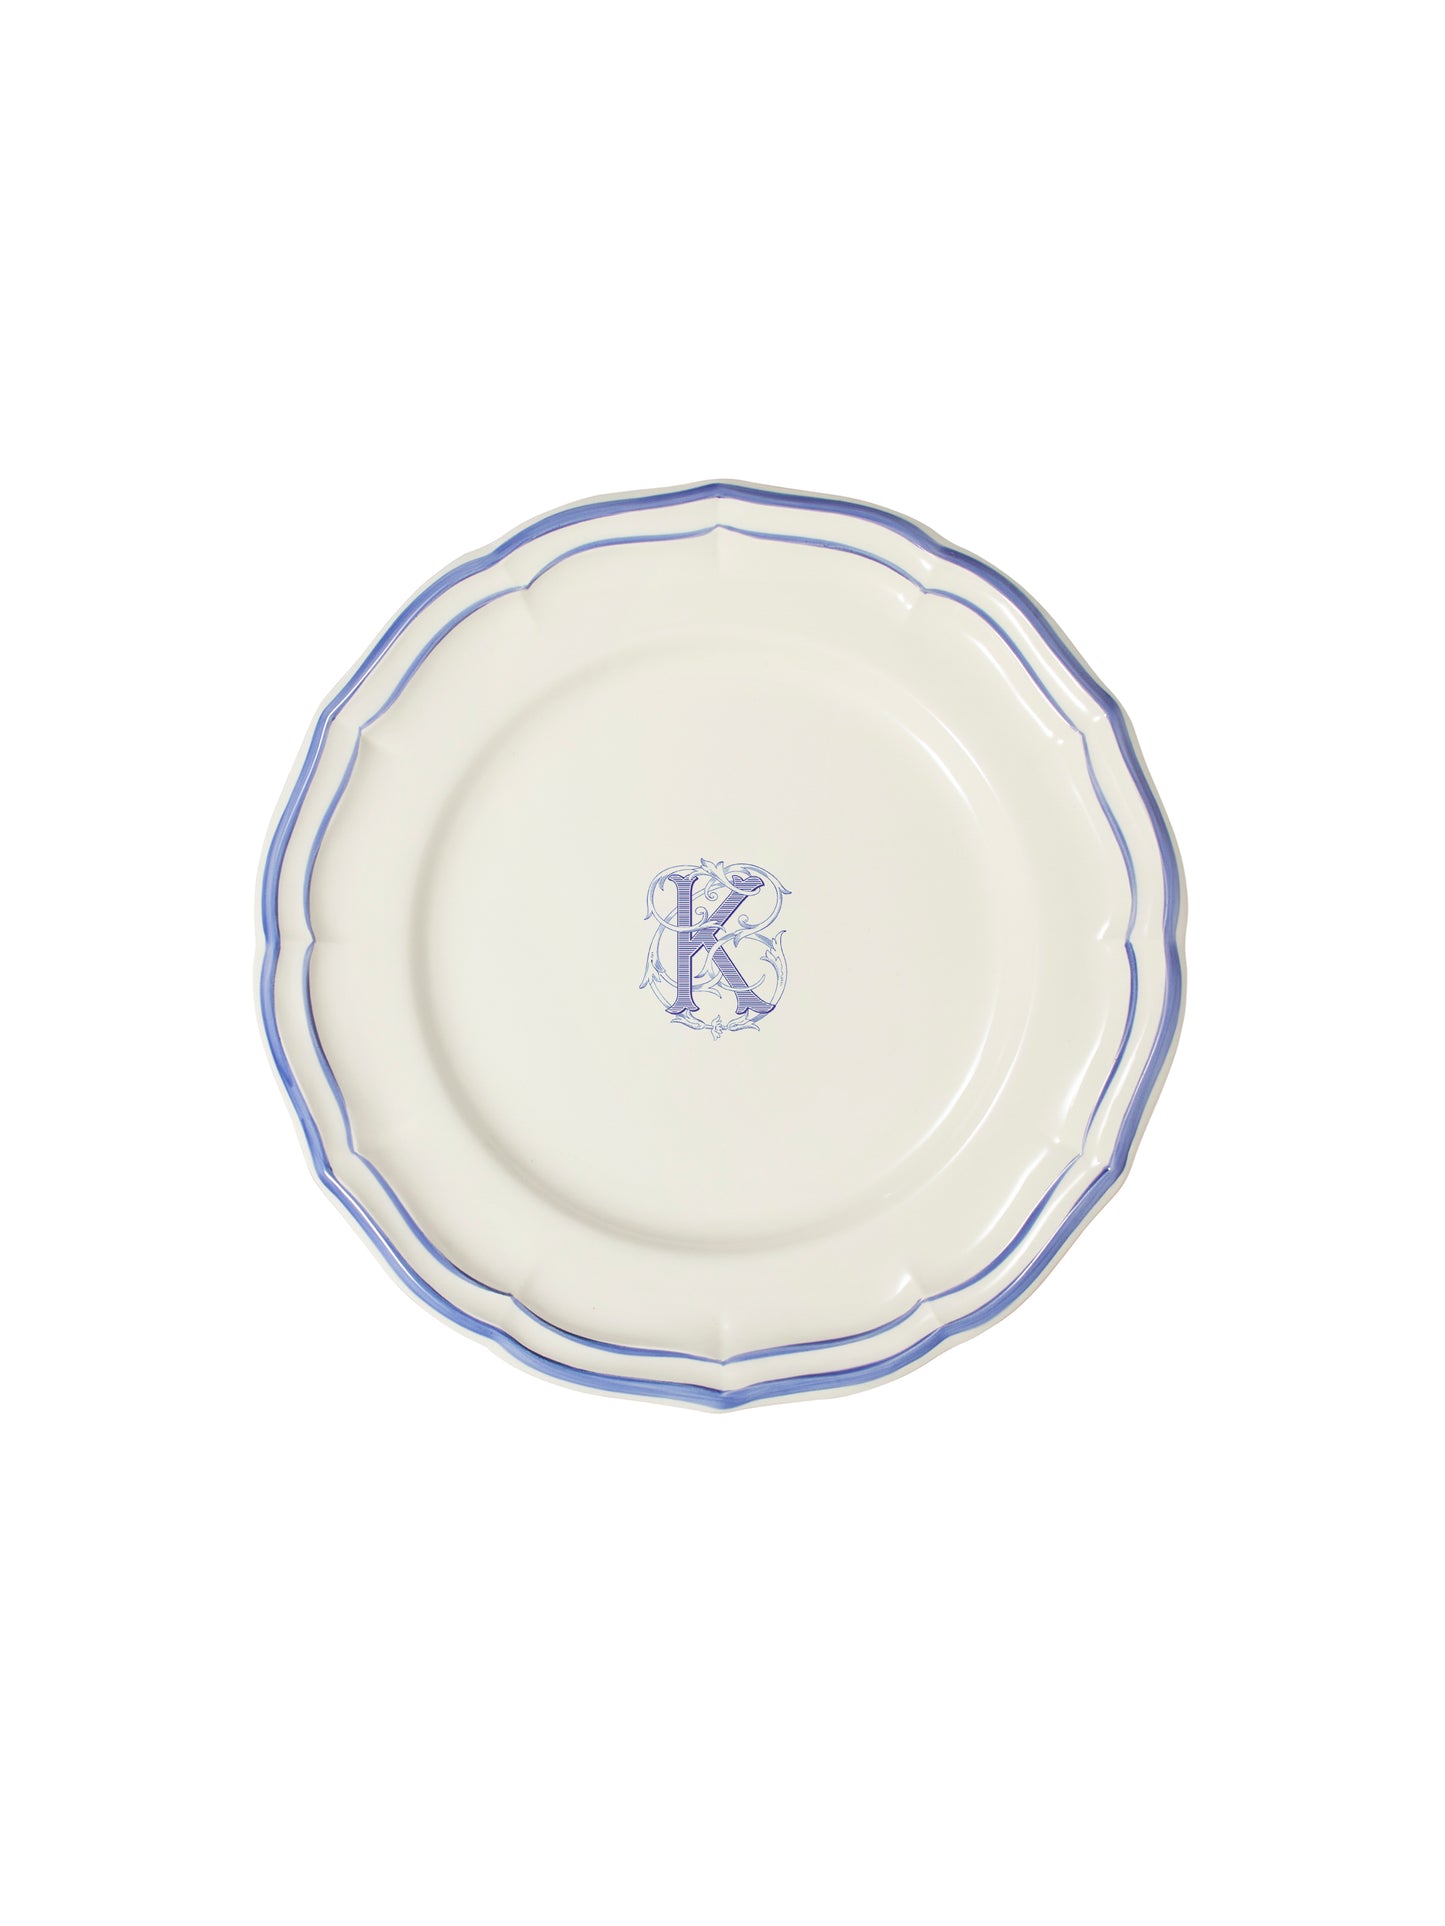 Gien Filet Bleu Monogram Salad Plate K Weston Table